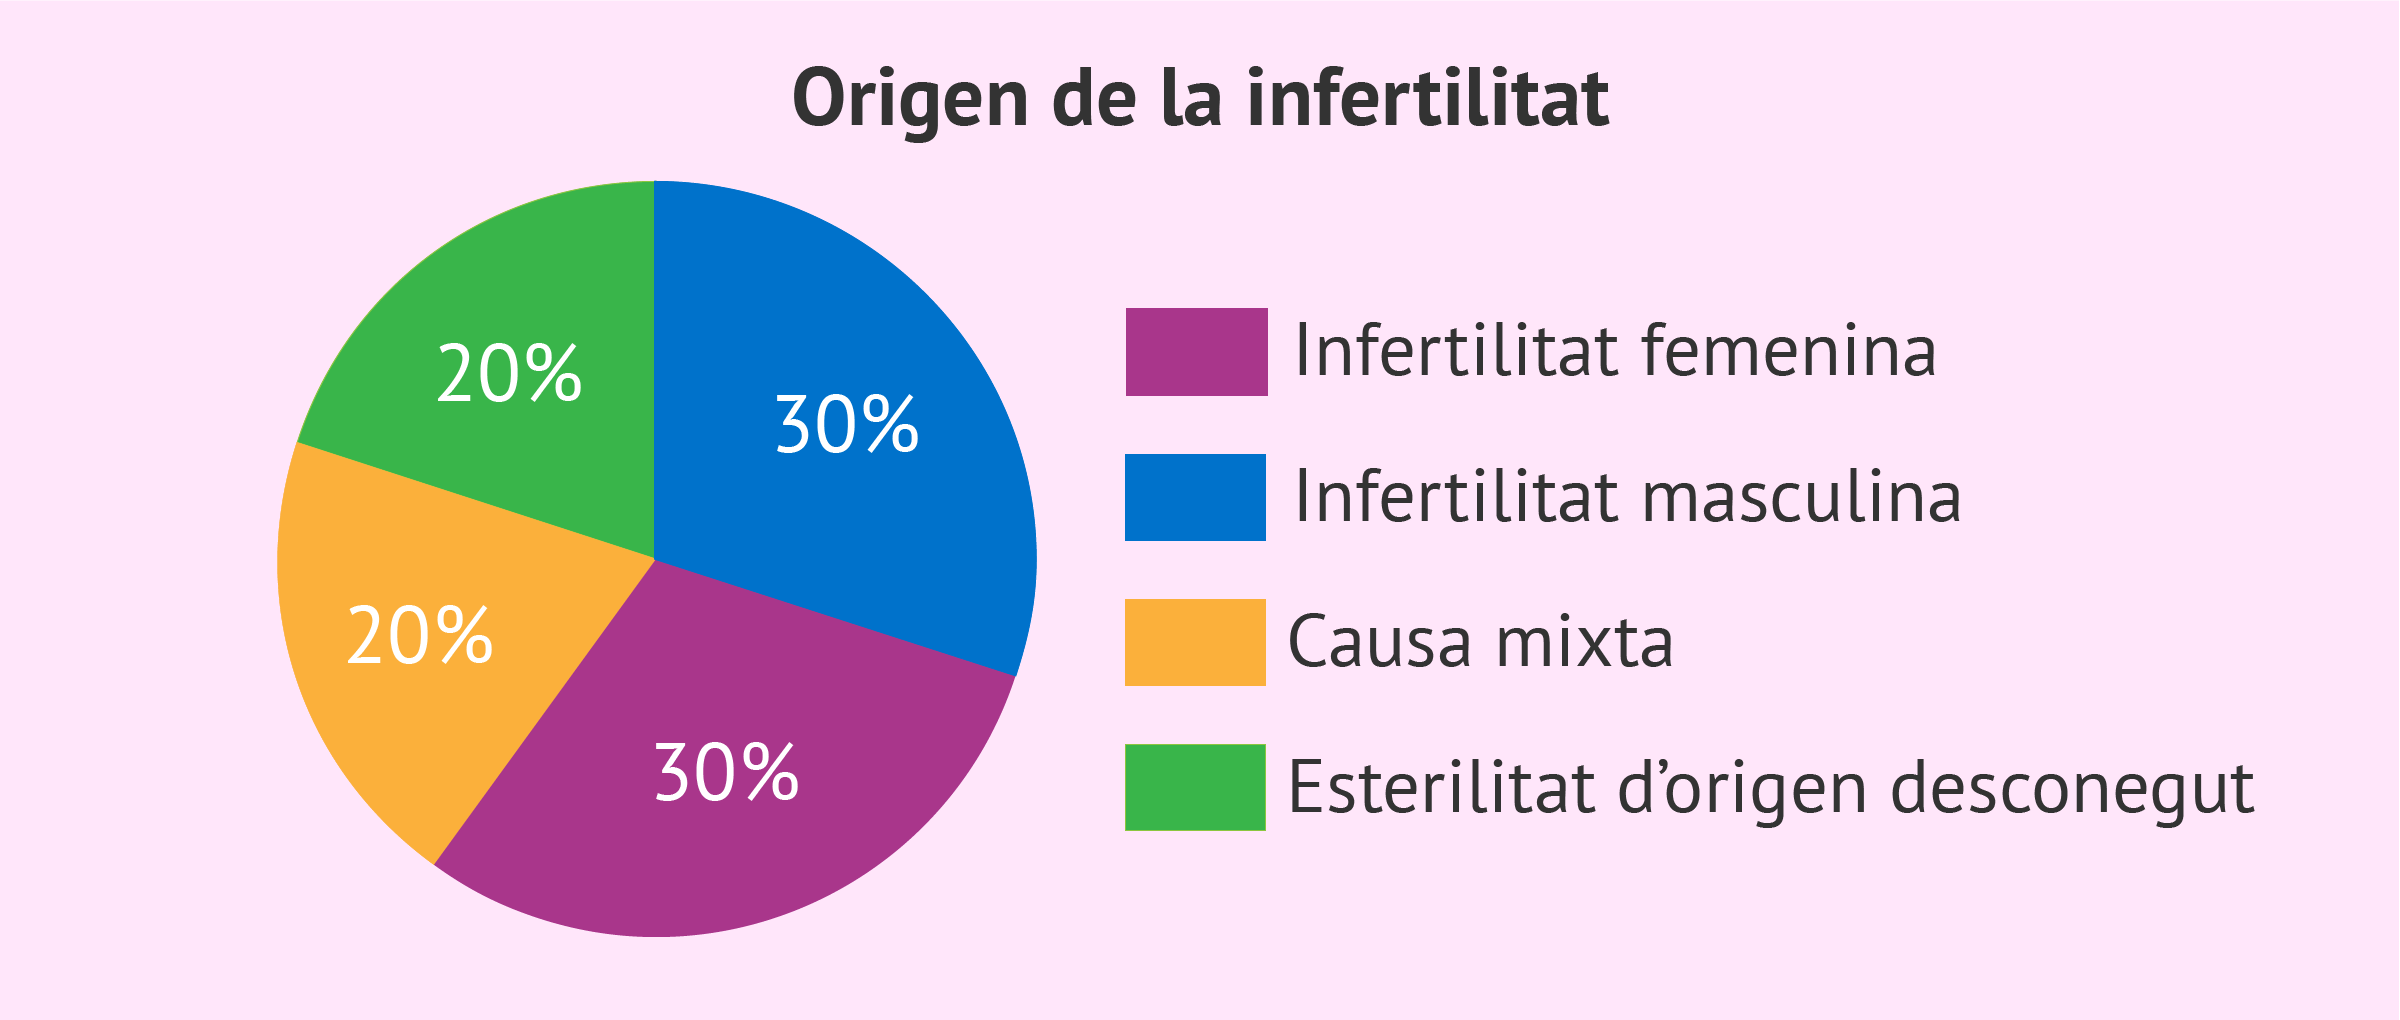 Origen de la infertilitat en la parella